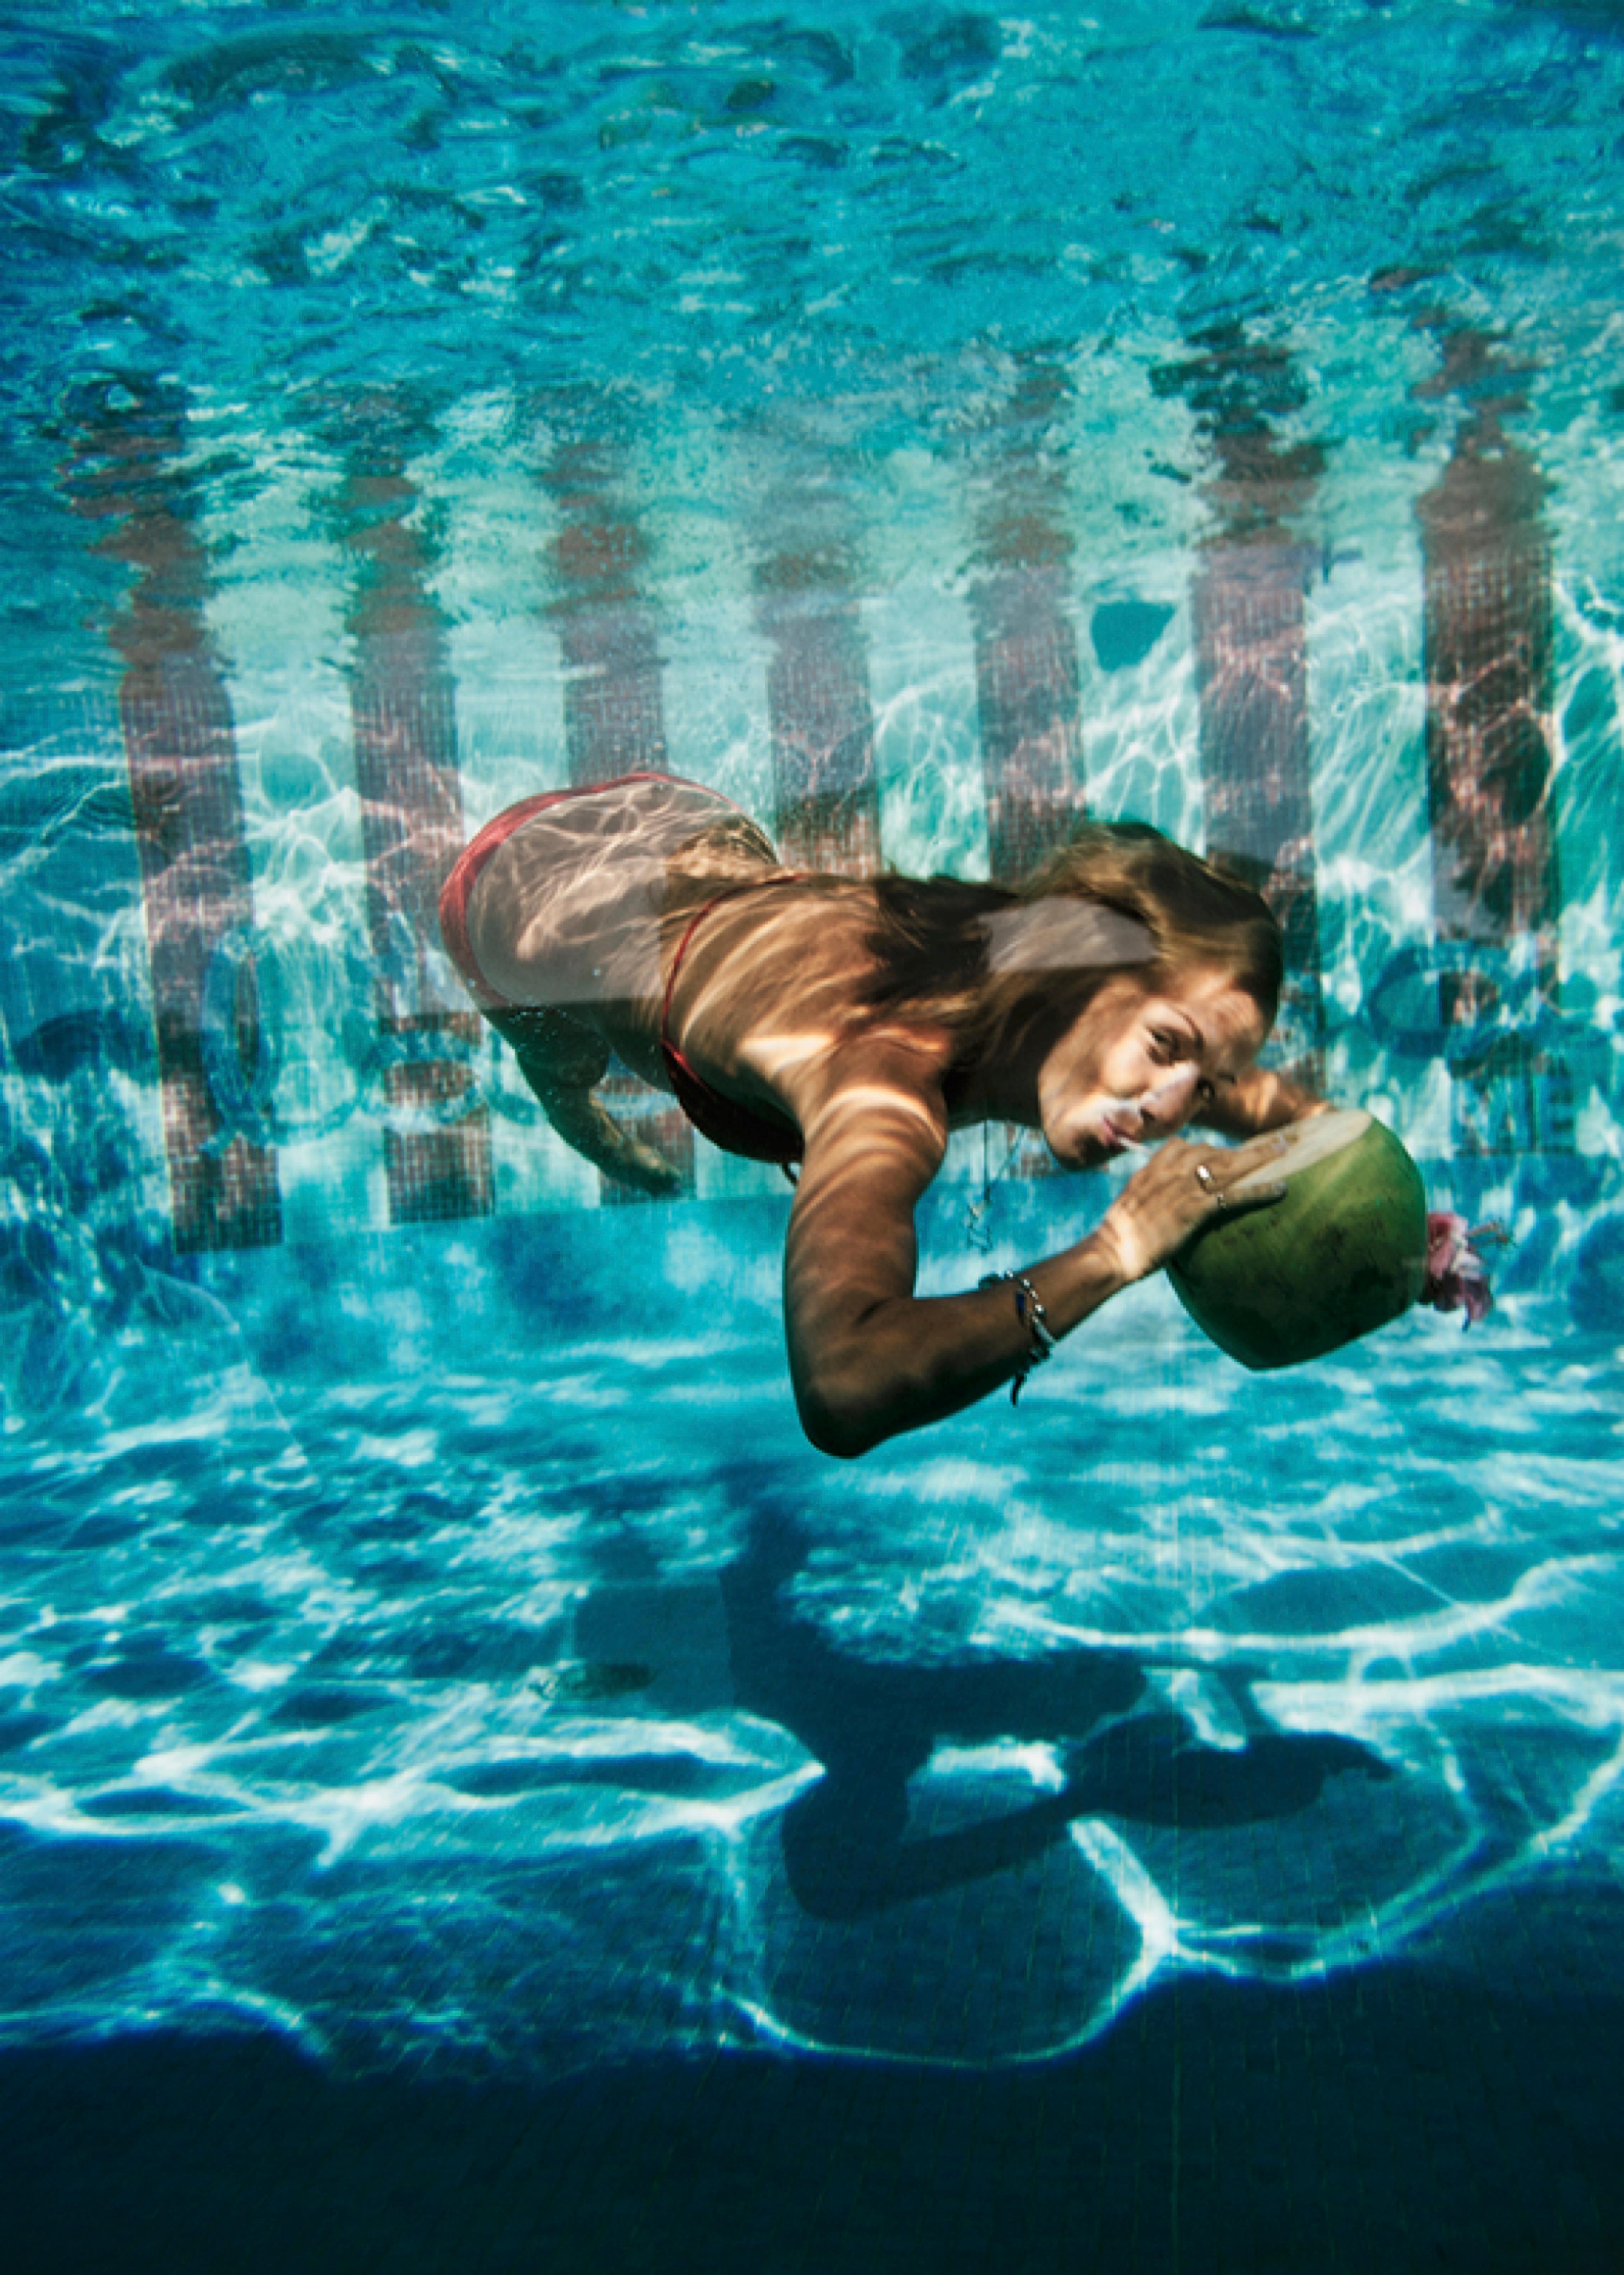 Unterwasser-Getränk

1972

 Eine Frau trinkt aus einer Kokosnuss unter Wasser im Pool des Hotels Las Brisas in Acapulco, Mexiko, Februar 1972.

Von Slim Aarons

30x20" / 76x51 cm - Papierformat 
C-Typ Druck
ungerahmt 

Nachlassgestempelte Ausgabe